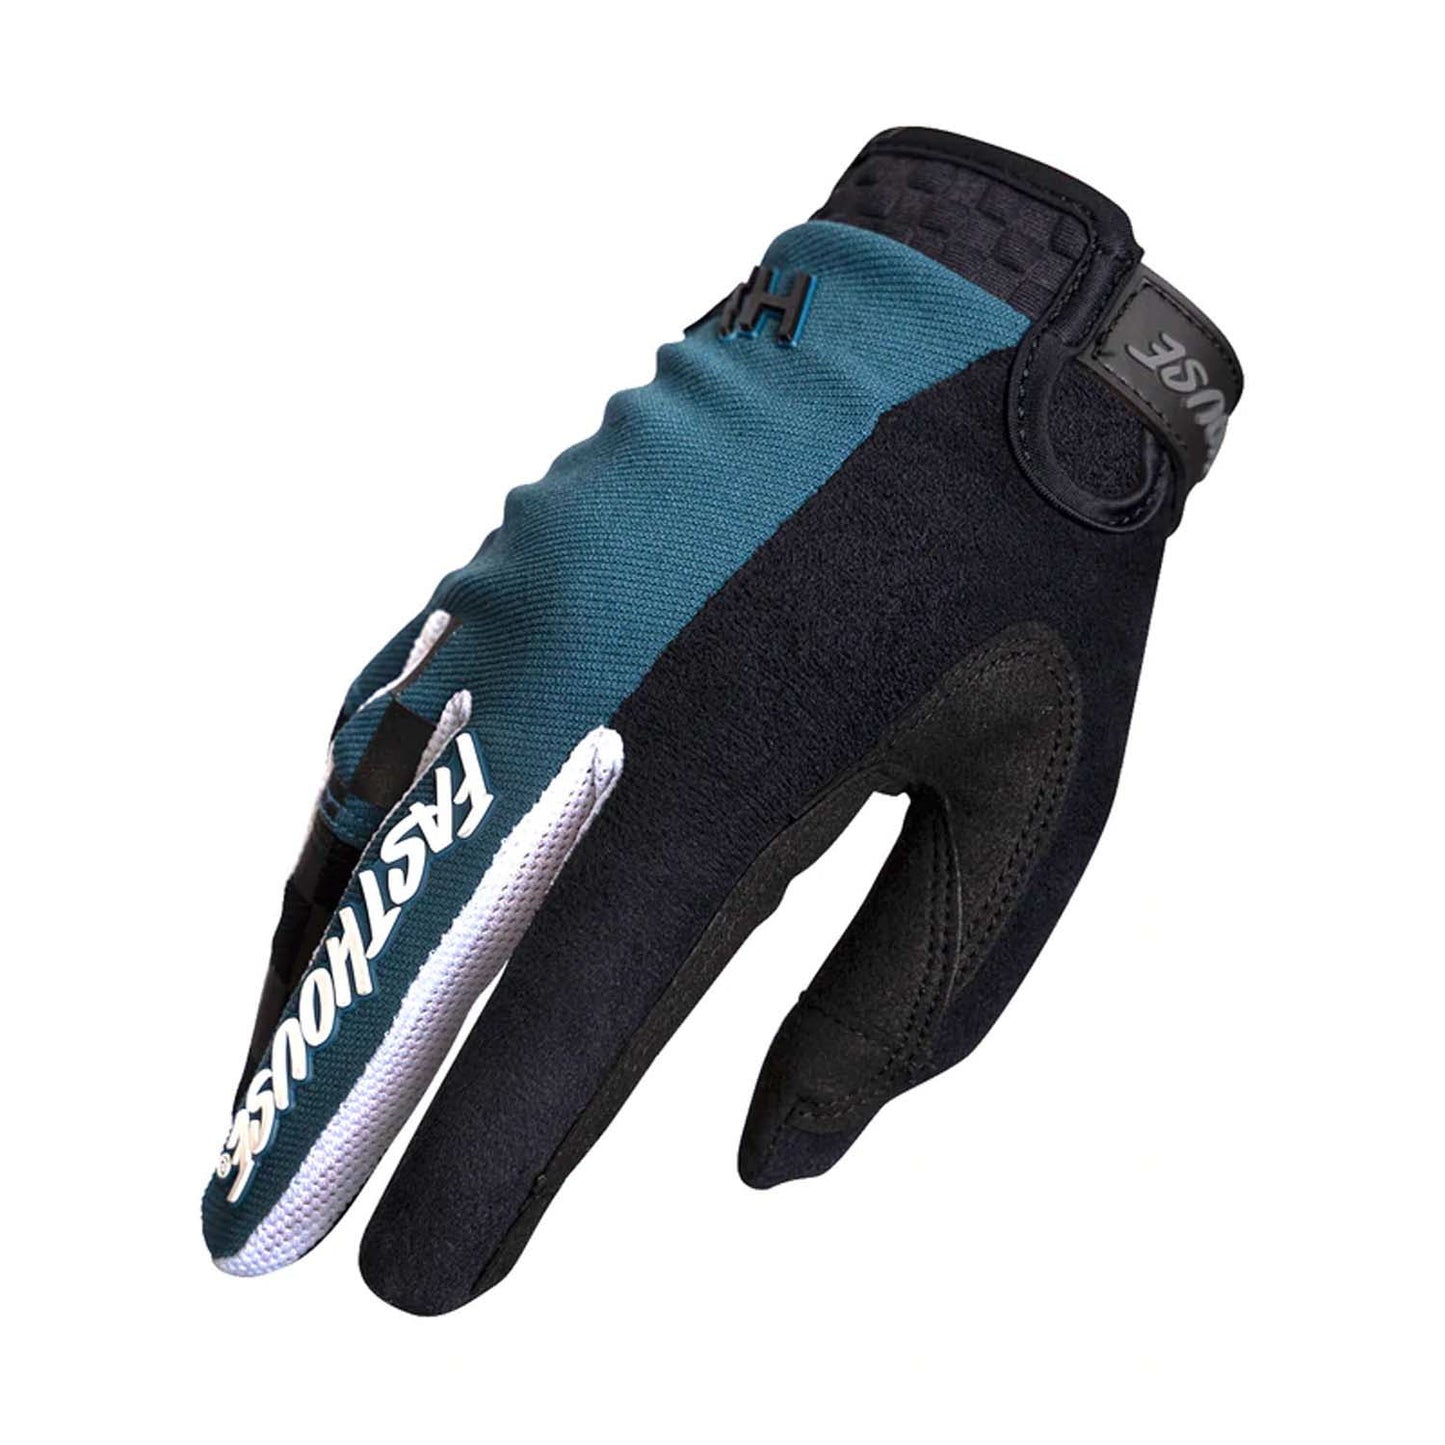 Fasthouse Speed Style Glove - Sale Ridgeline - Indigo Black Bike Gloves